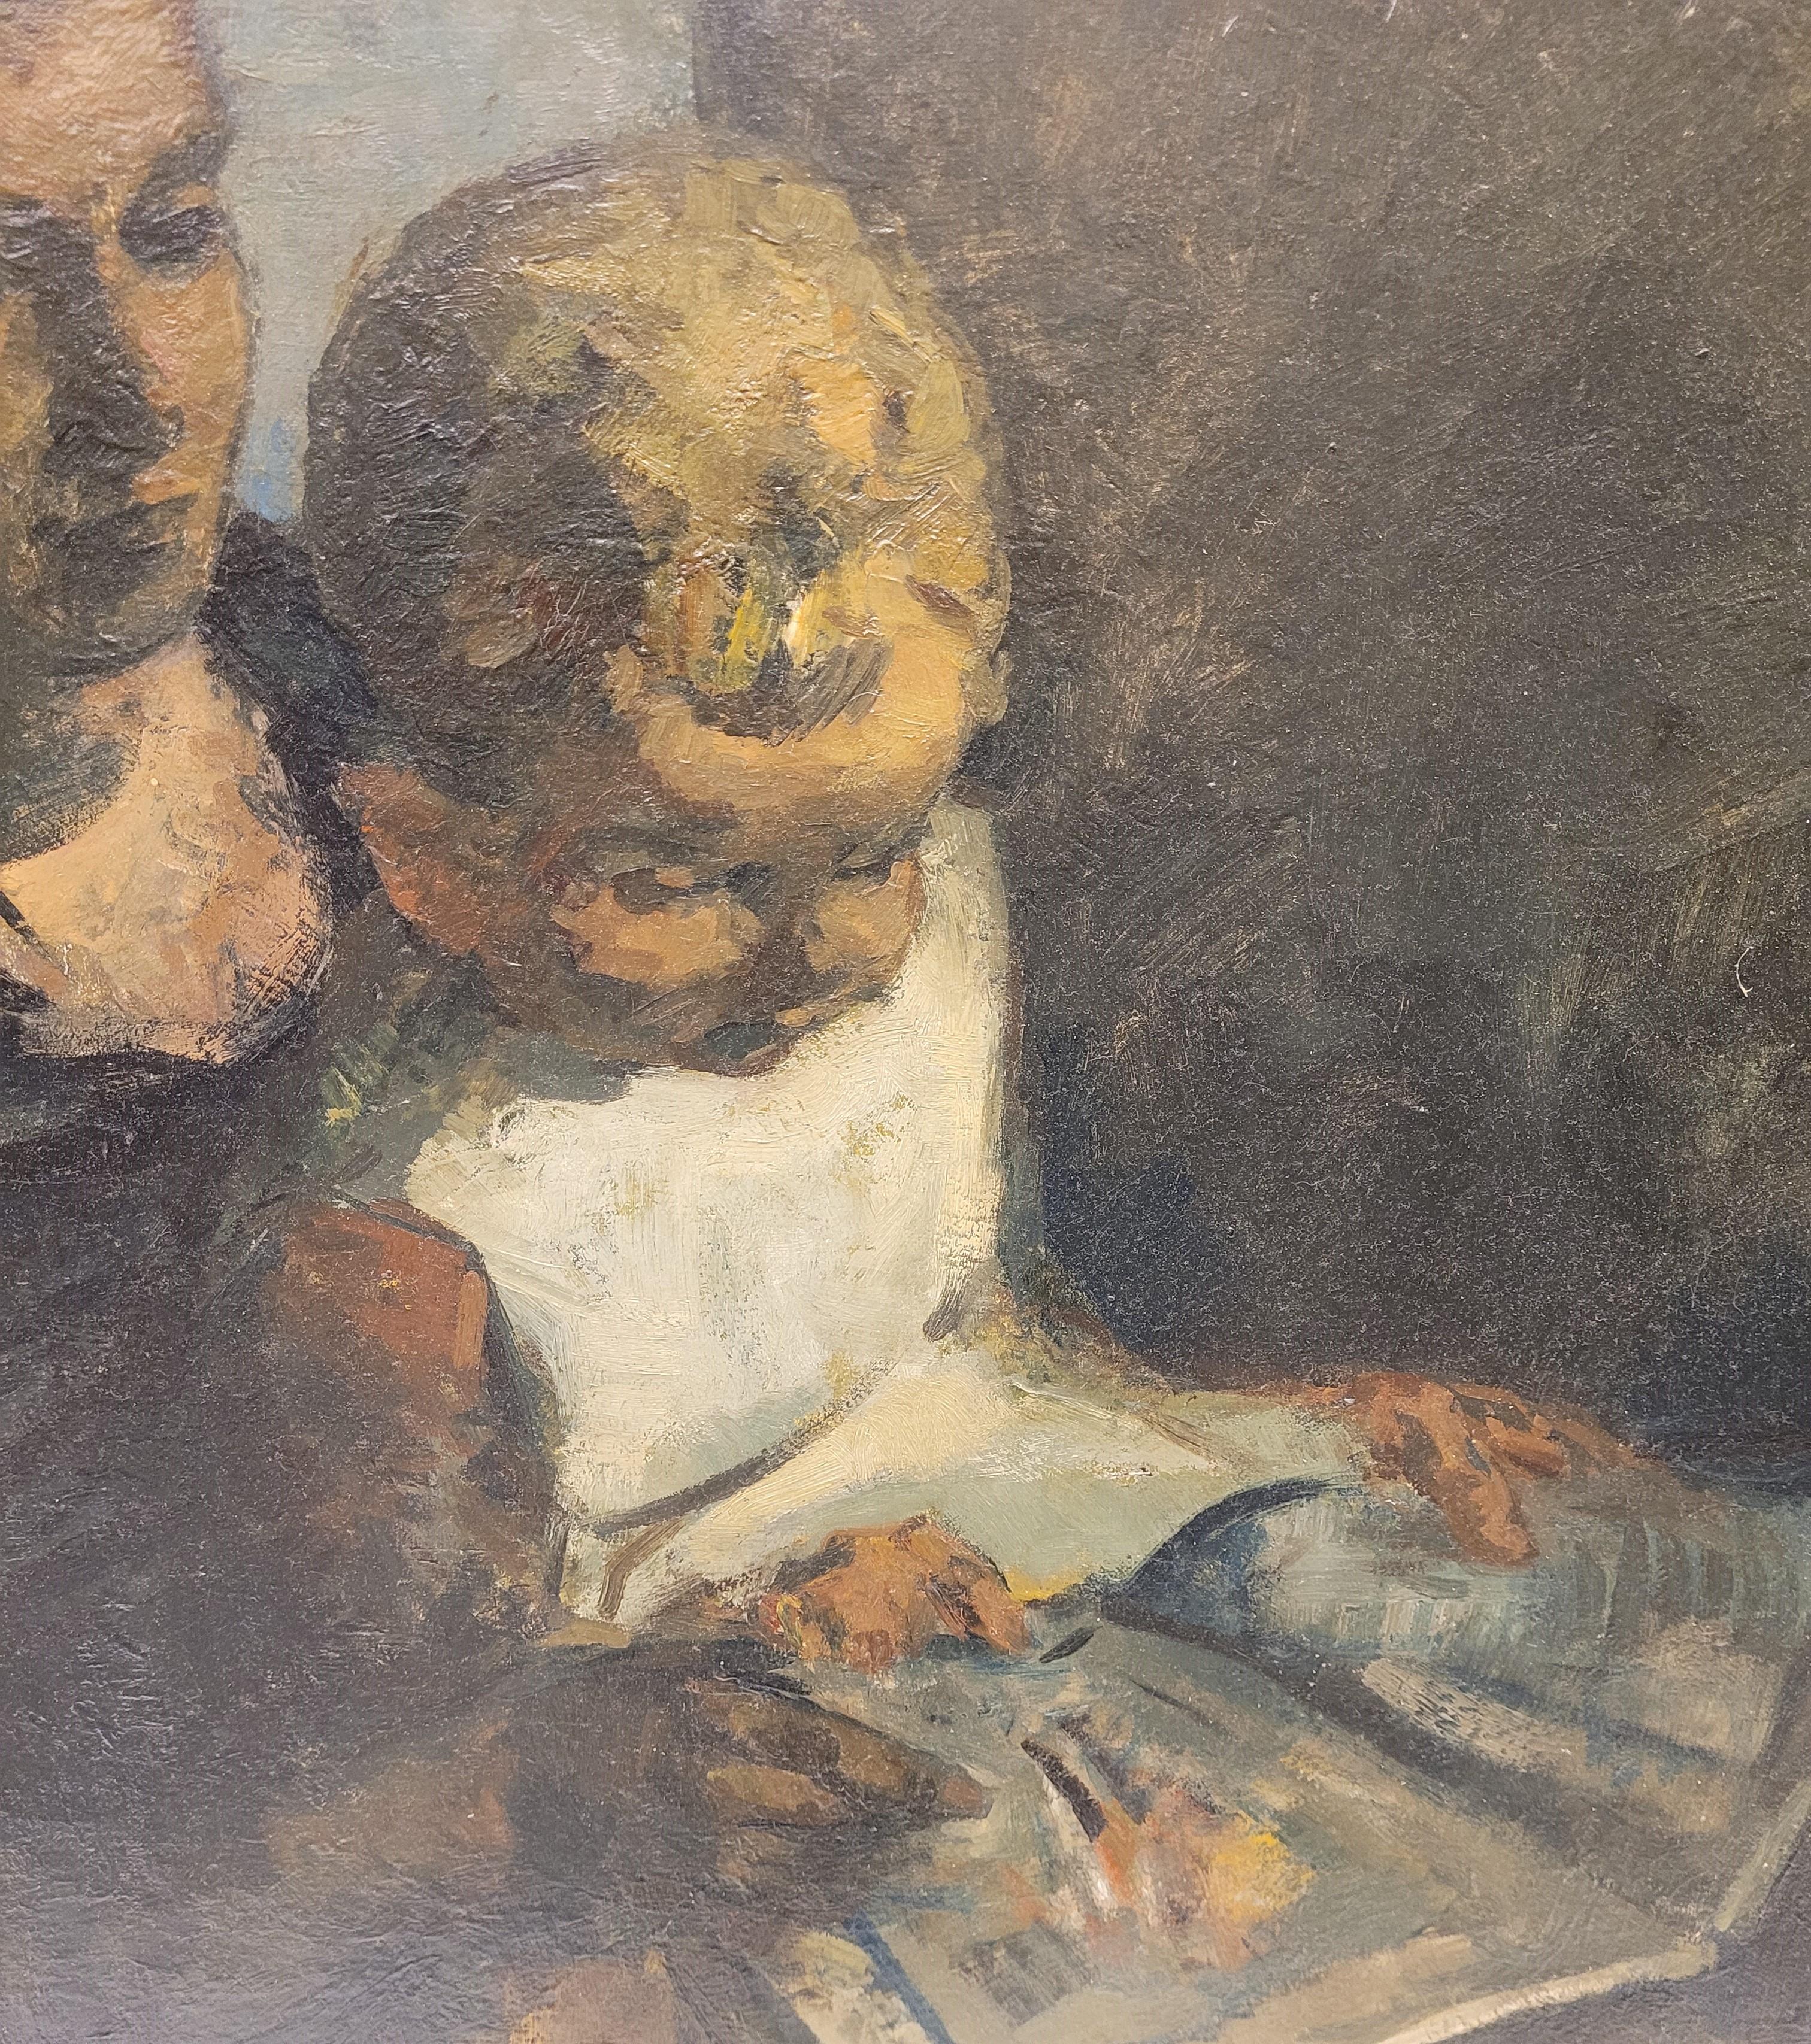 Peinture expressionniste belge Enseignant à lire, Gustave Camus, 43 signé 2